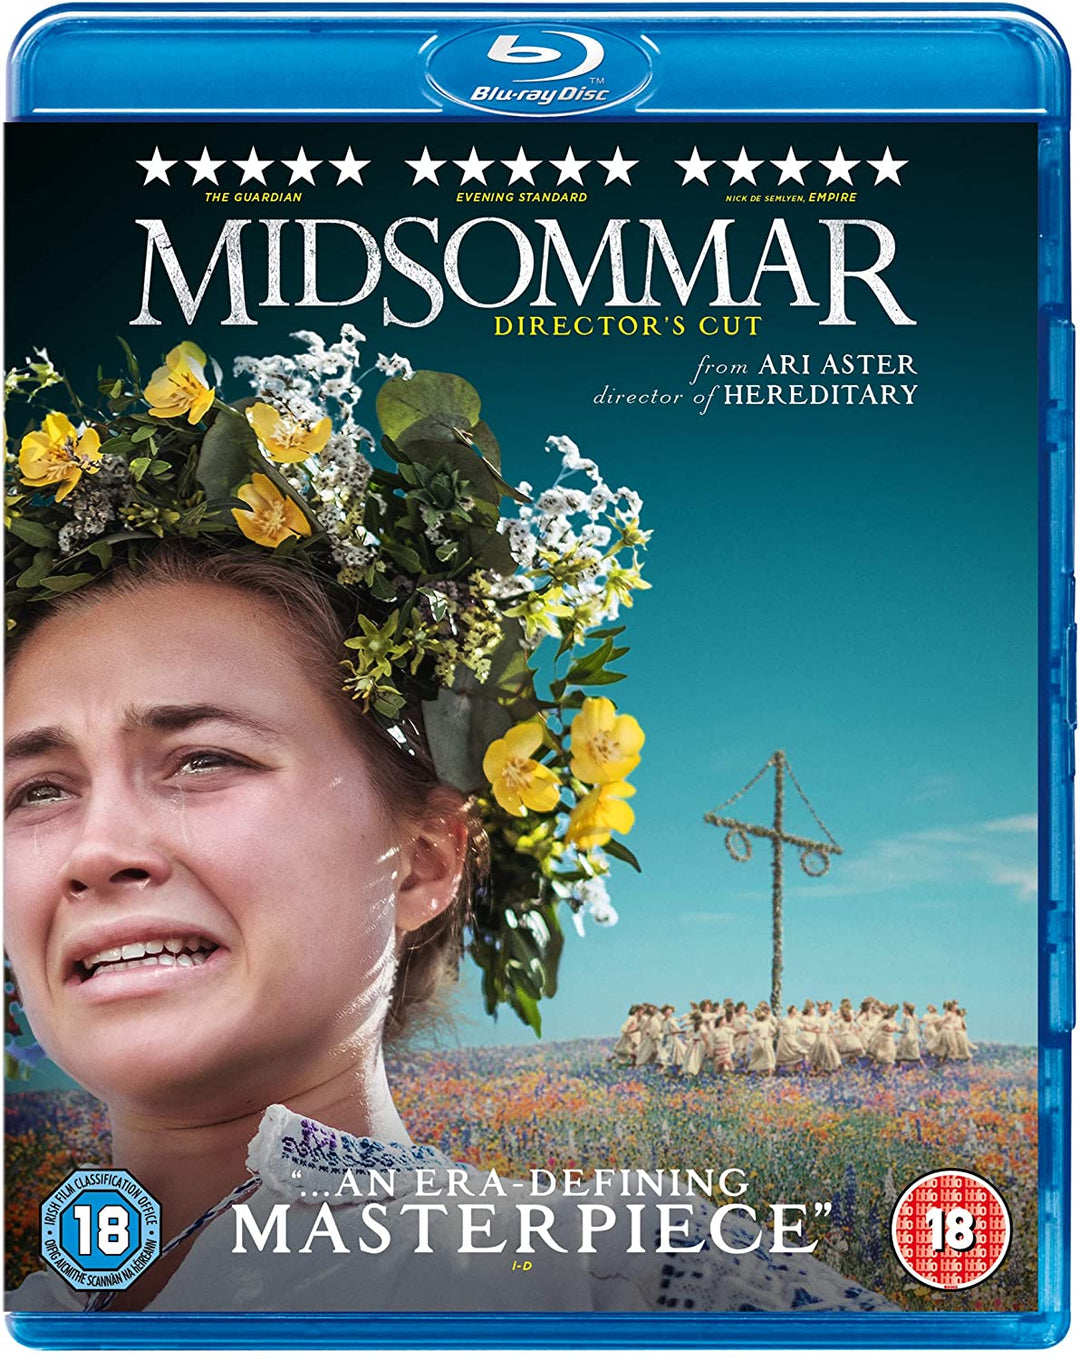 Midsommar Director's Cut - Horror/Drama [Blu-ray]